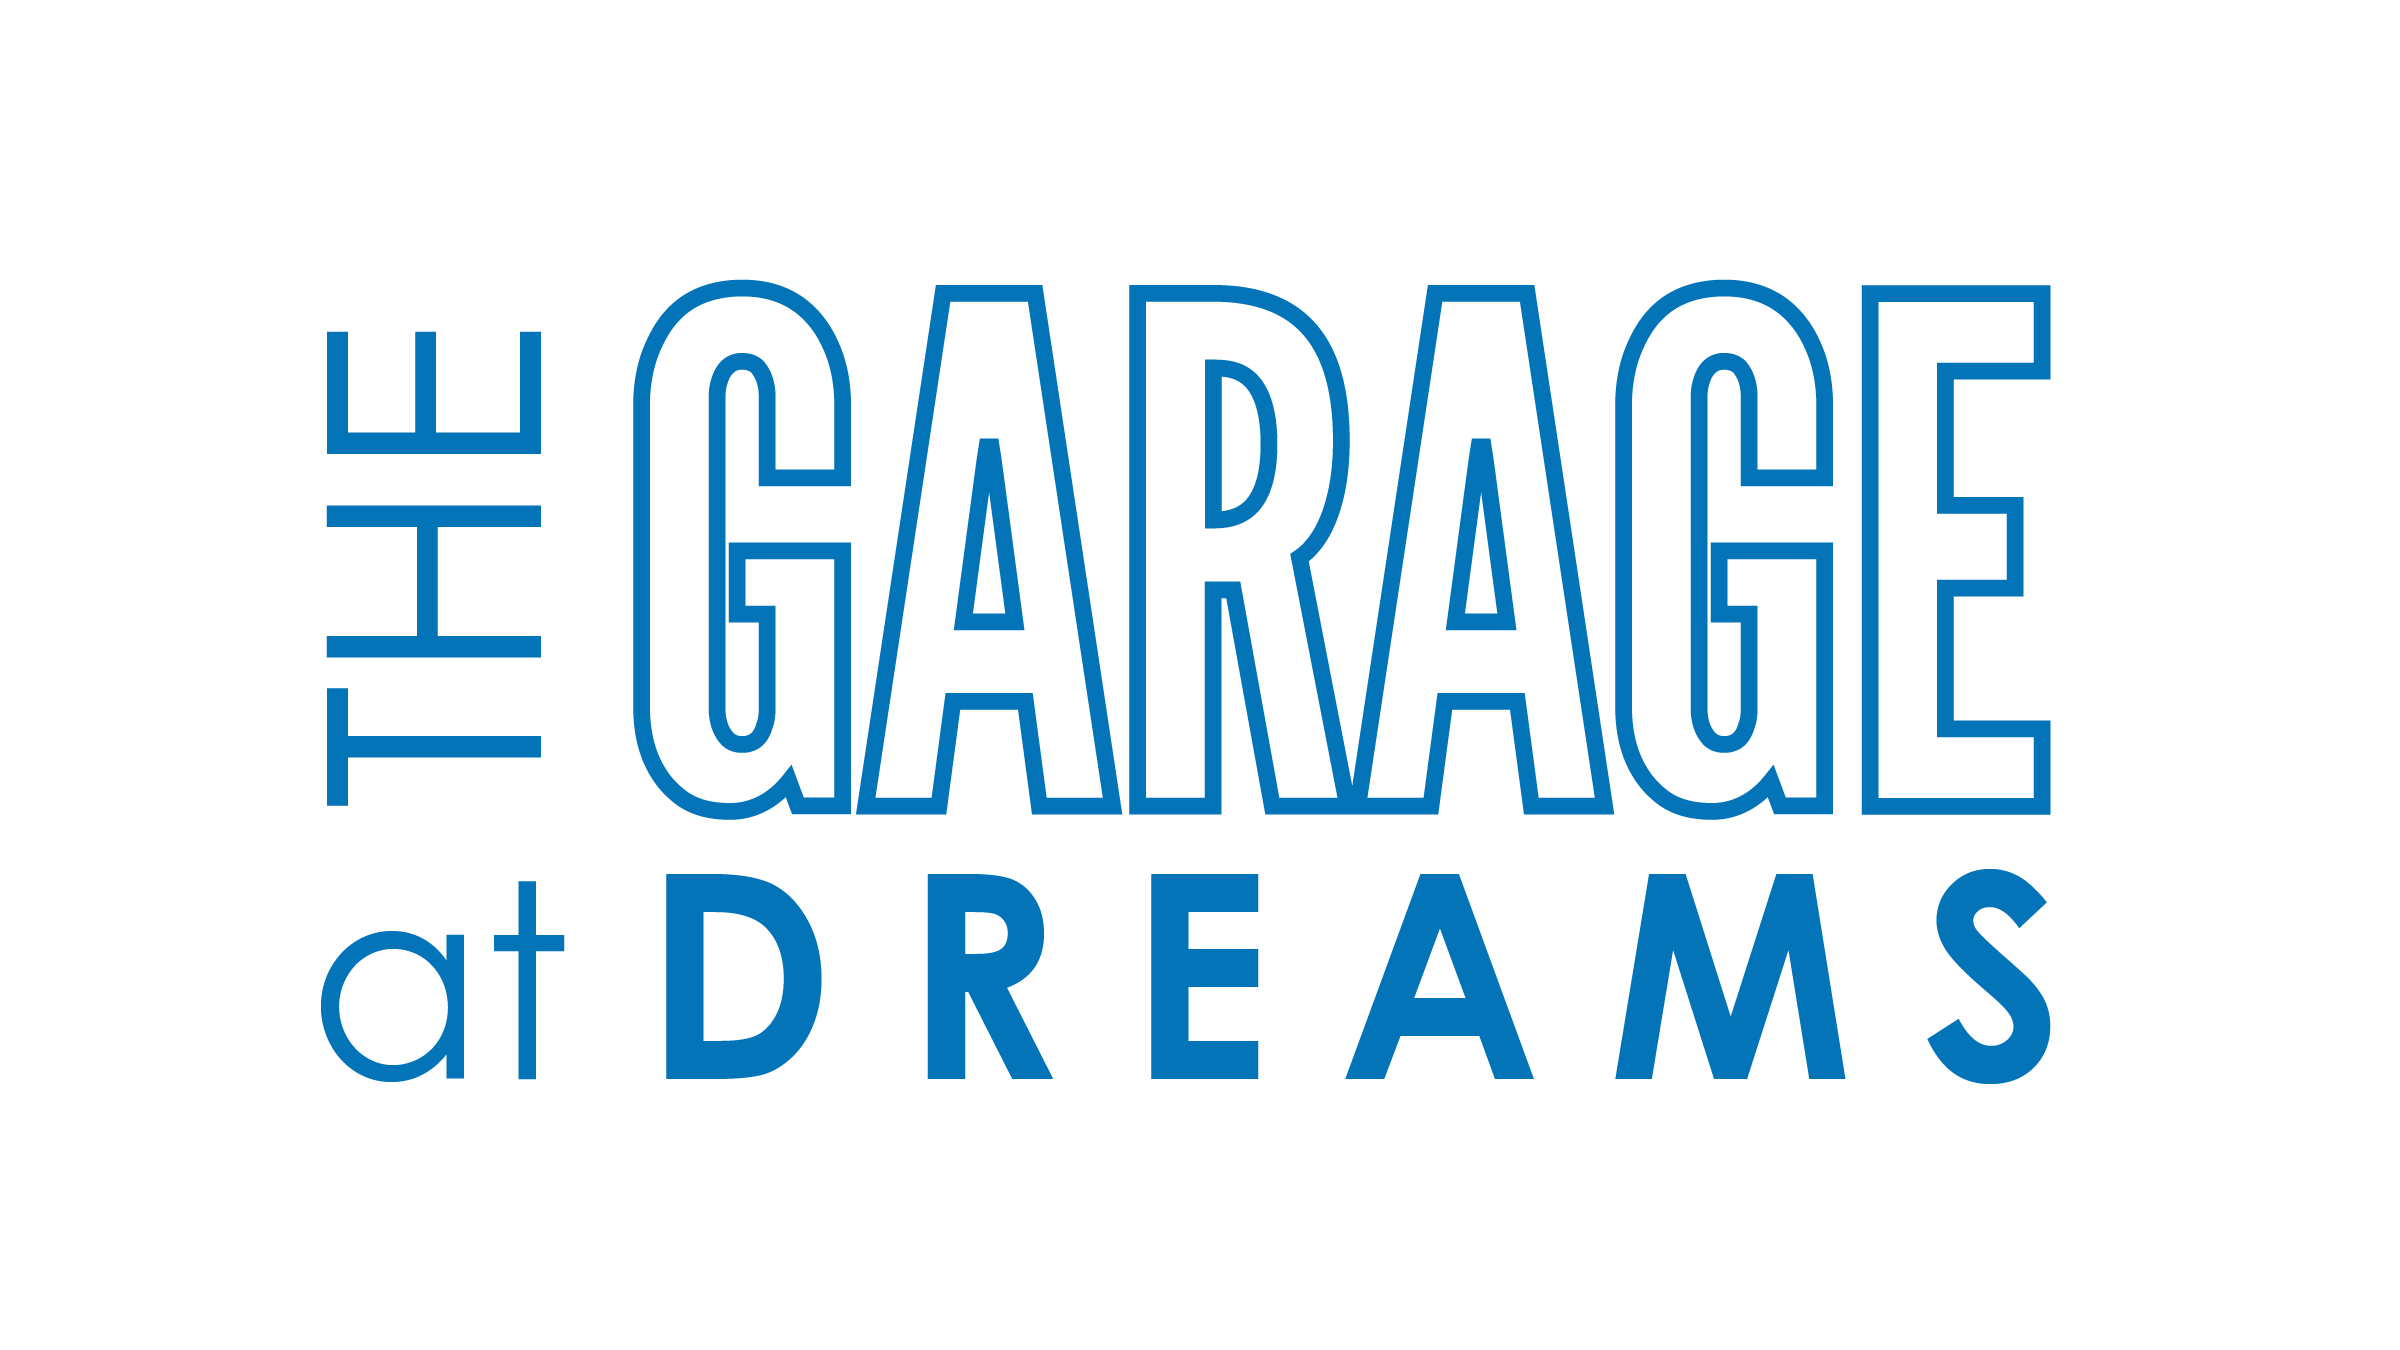 The Garage at DREAMS